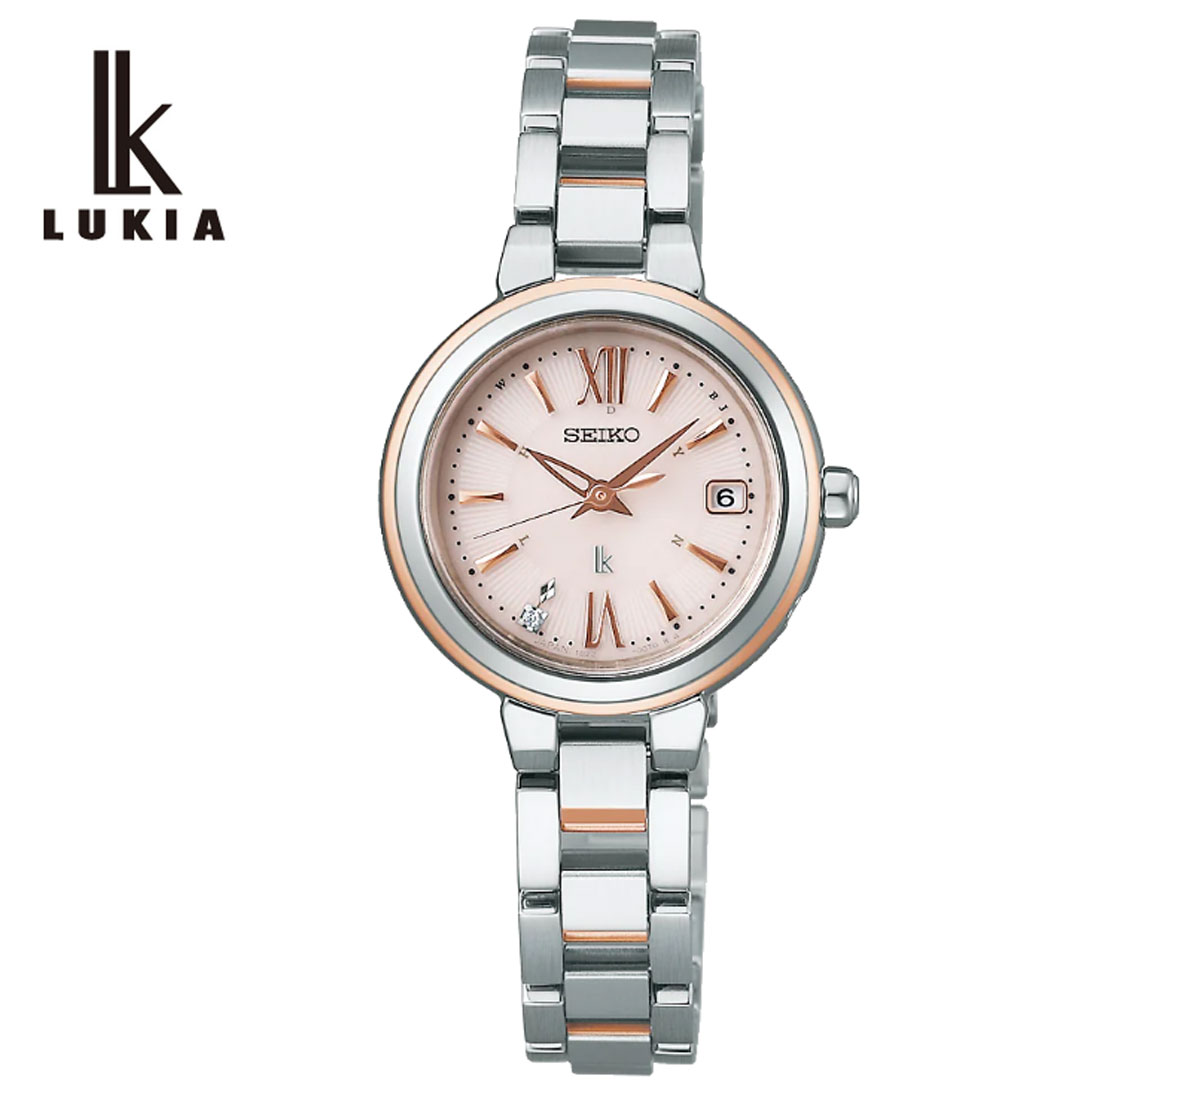 SEIKO LUKIA SSVW234 セイコー ルキア Essential Collection エッセンシャルコレクション レディース 女性用 腕時計 ソーラー電波 ラウンド型 シルバー ピンクゴールド 